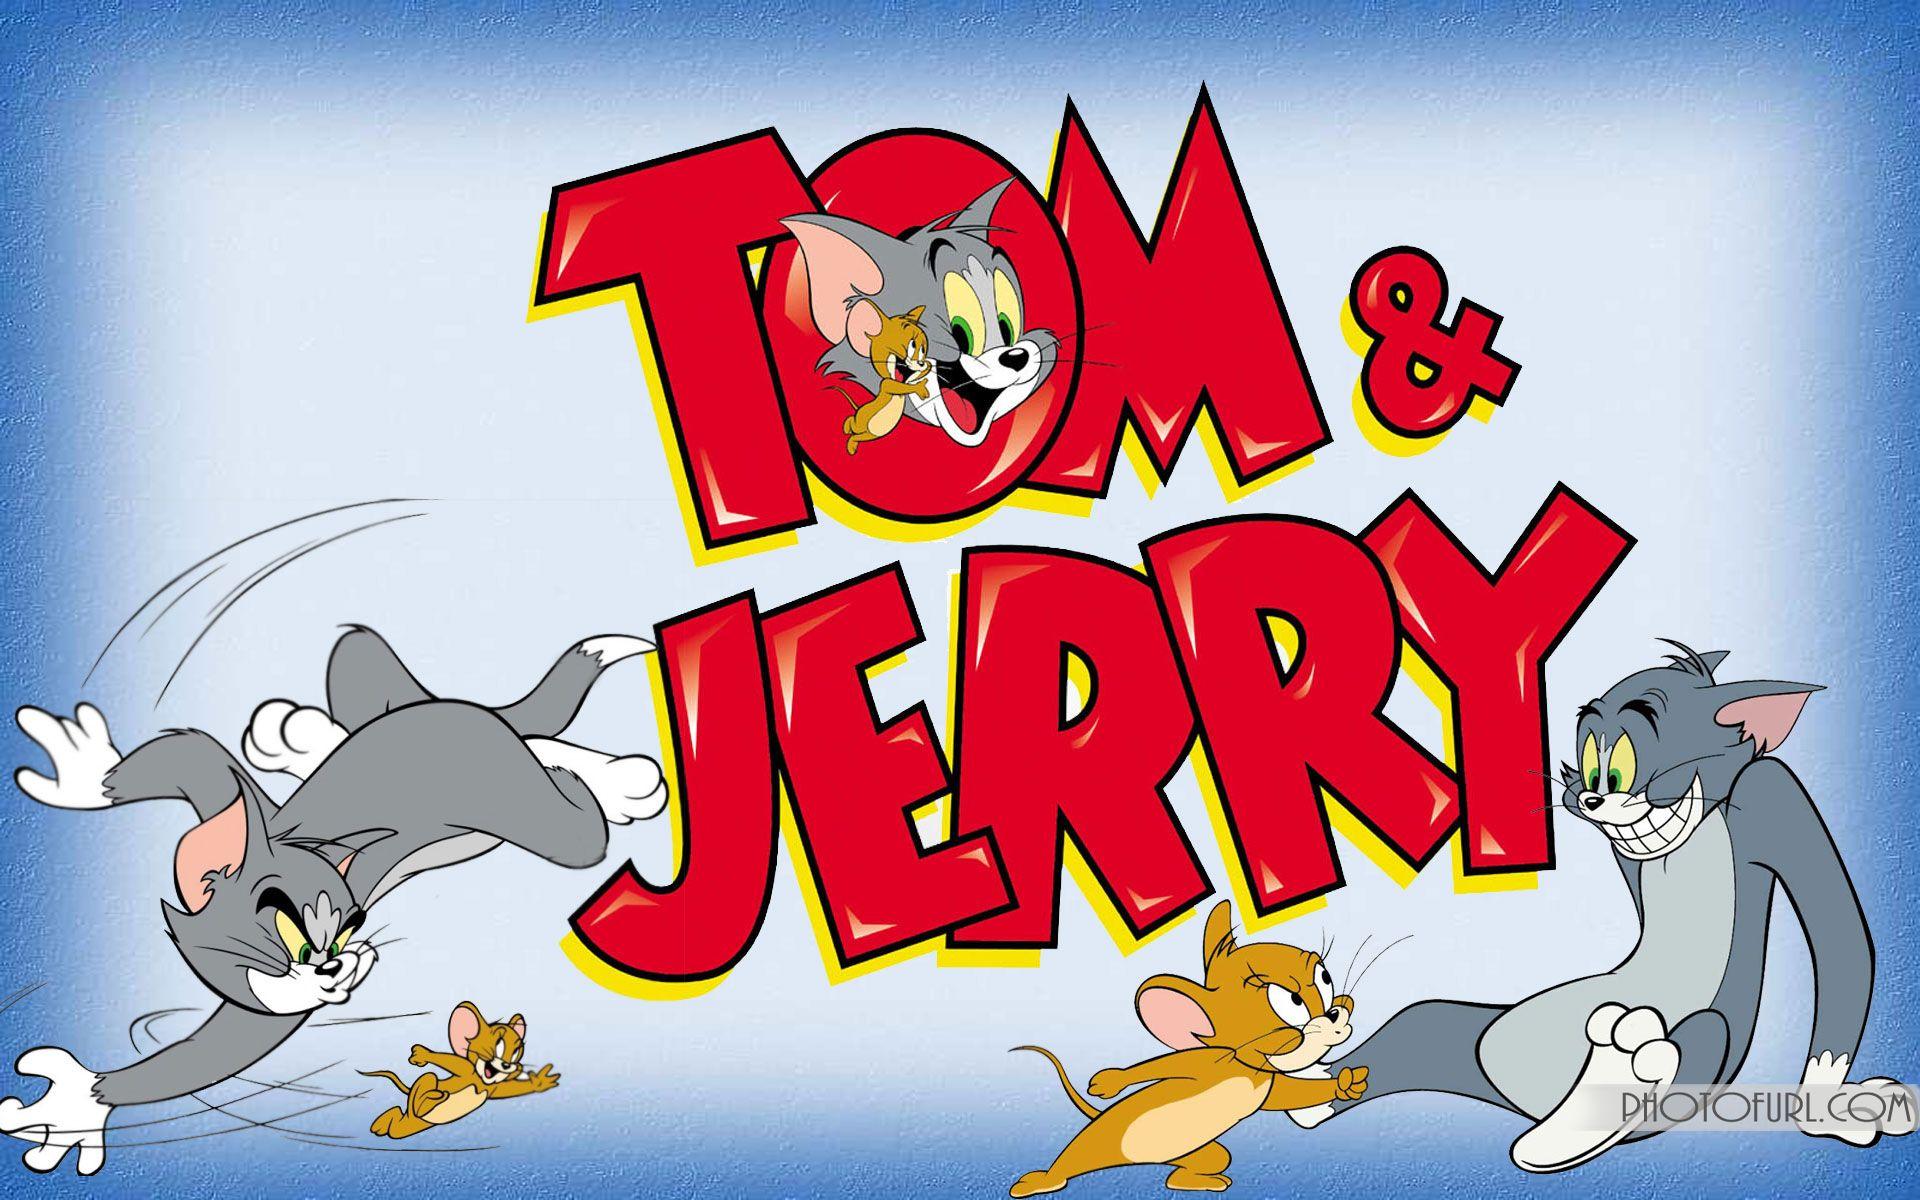 Jerry том и джерри. Tom and Jerry 2021. Шоу Тома и Джерри 2021. Том и Джерри 1950. Том и Джерри 1997.